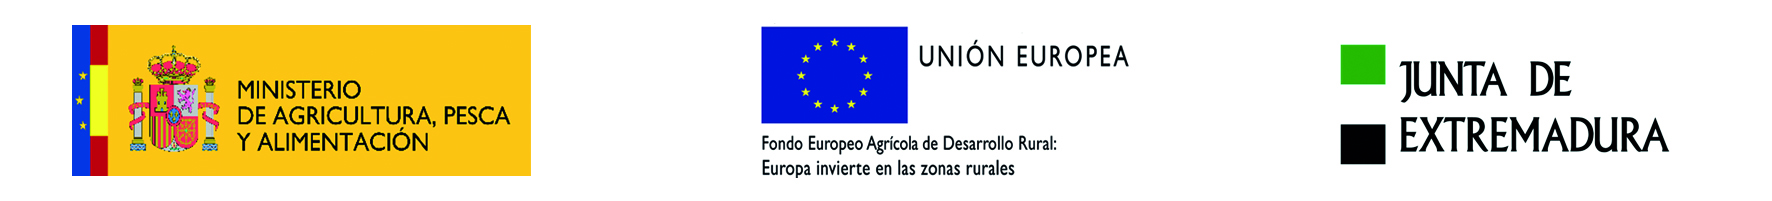 LOGO MINISTERIO DE AGRICULTURA, PESCA Y ALIMENTACION - UNION EUROEPEA - JUNTA DE EXTREMADURA